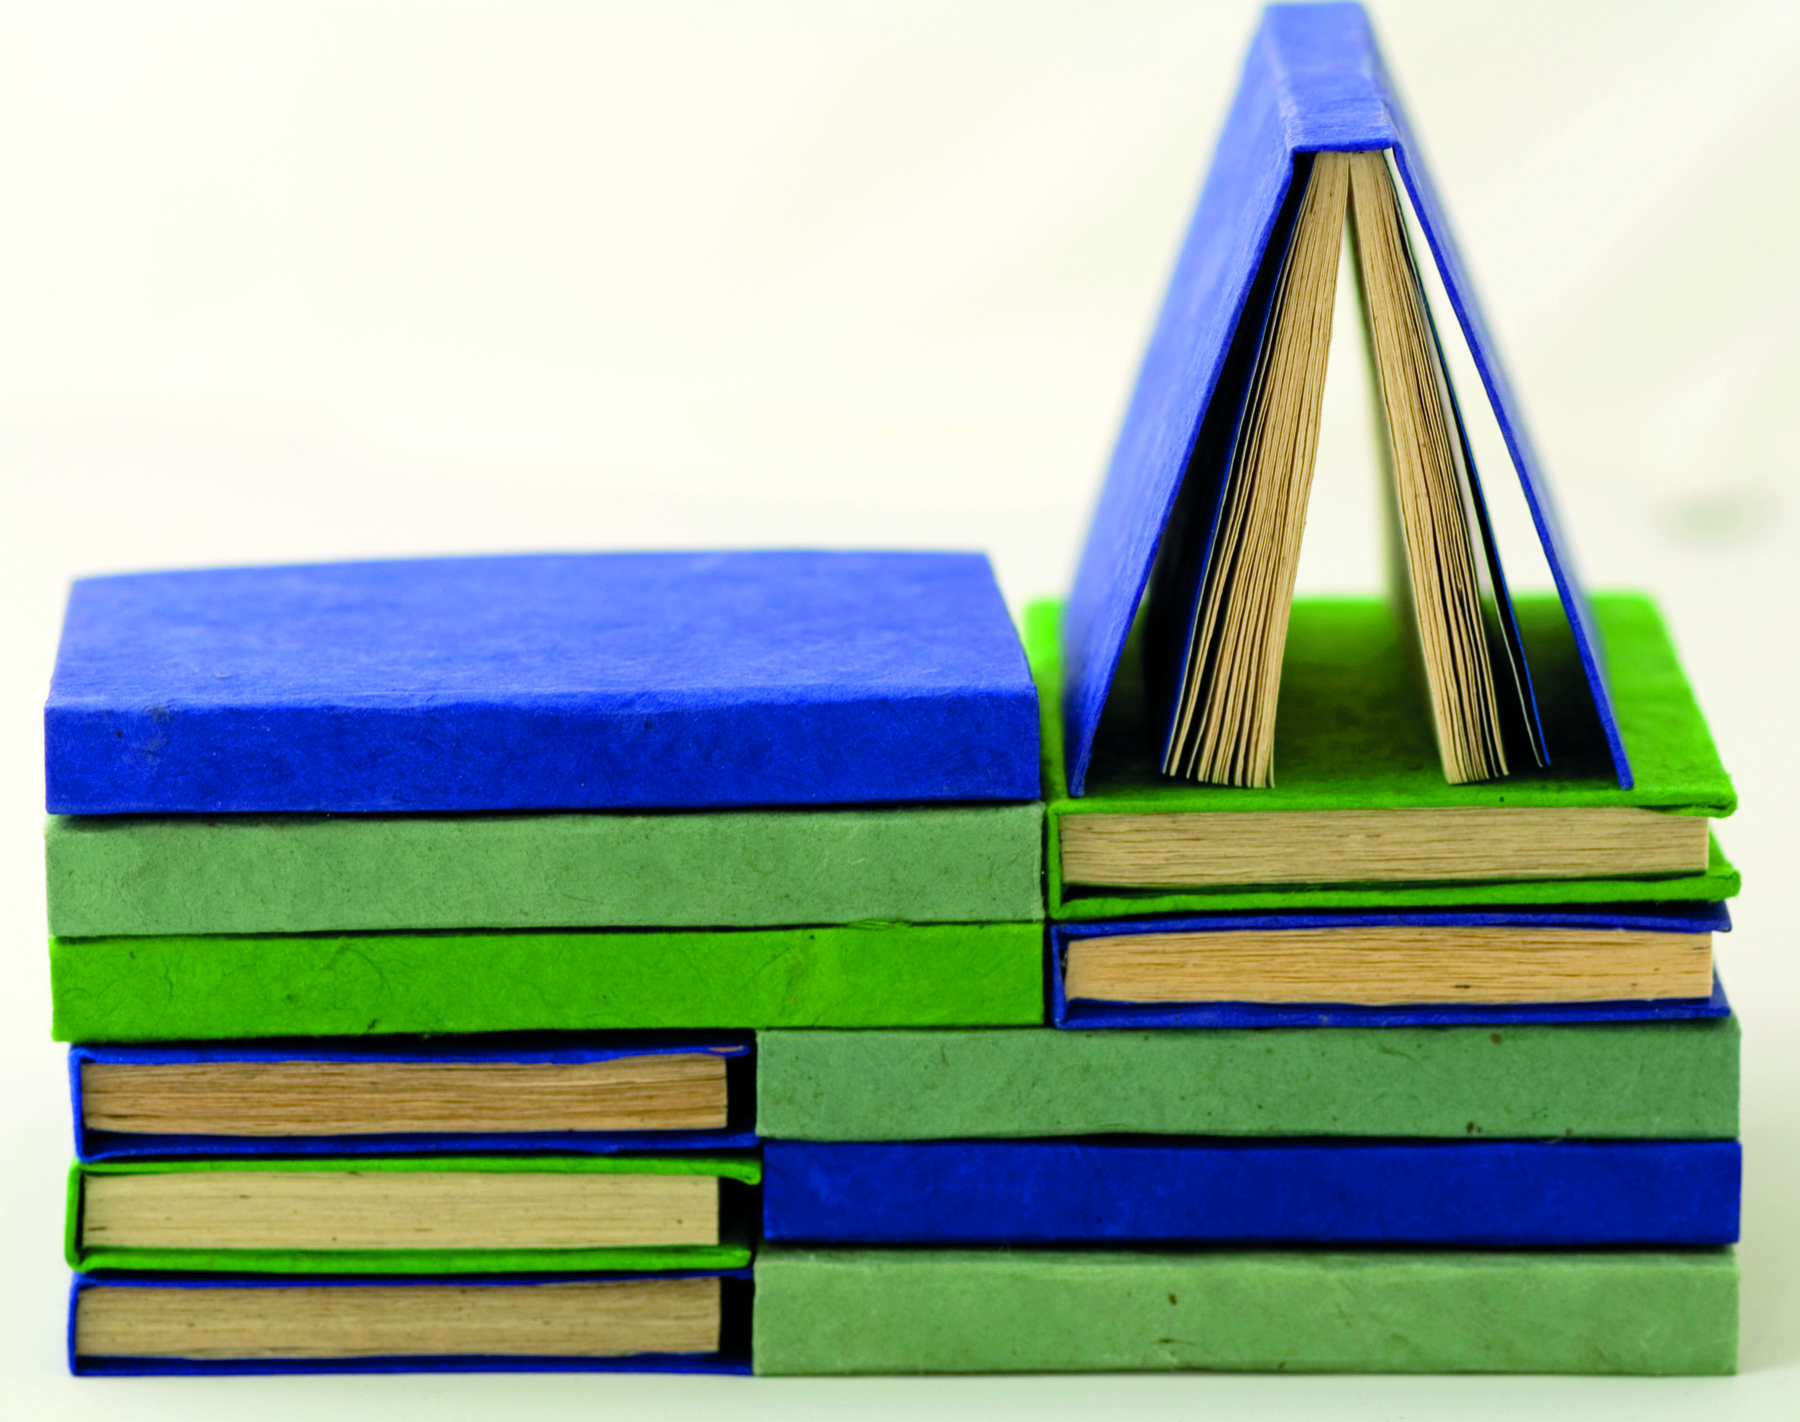 Fotografia. Diversos livros de capas artesanais azuis e verdes empilhados em posições distintas, alguns com a lombada para a frente e outros para o lado esquerdo. À direita, sobre uma das pilhas com a lombada para o lado esquerdo, há um único livro de capa azul semiaberto apoiado sobre um outro livro de capa verde.